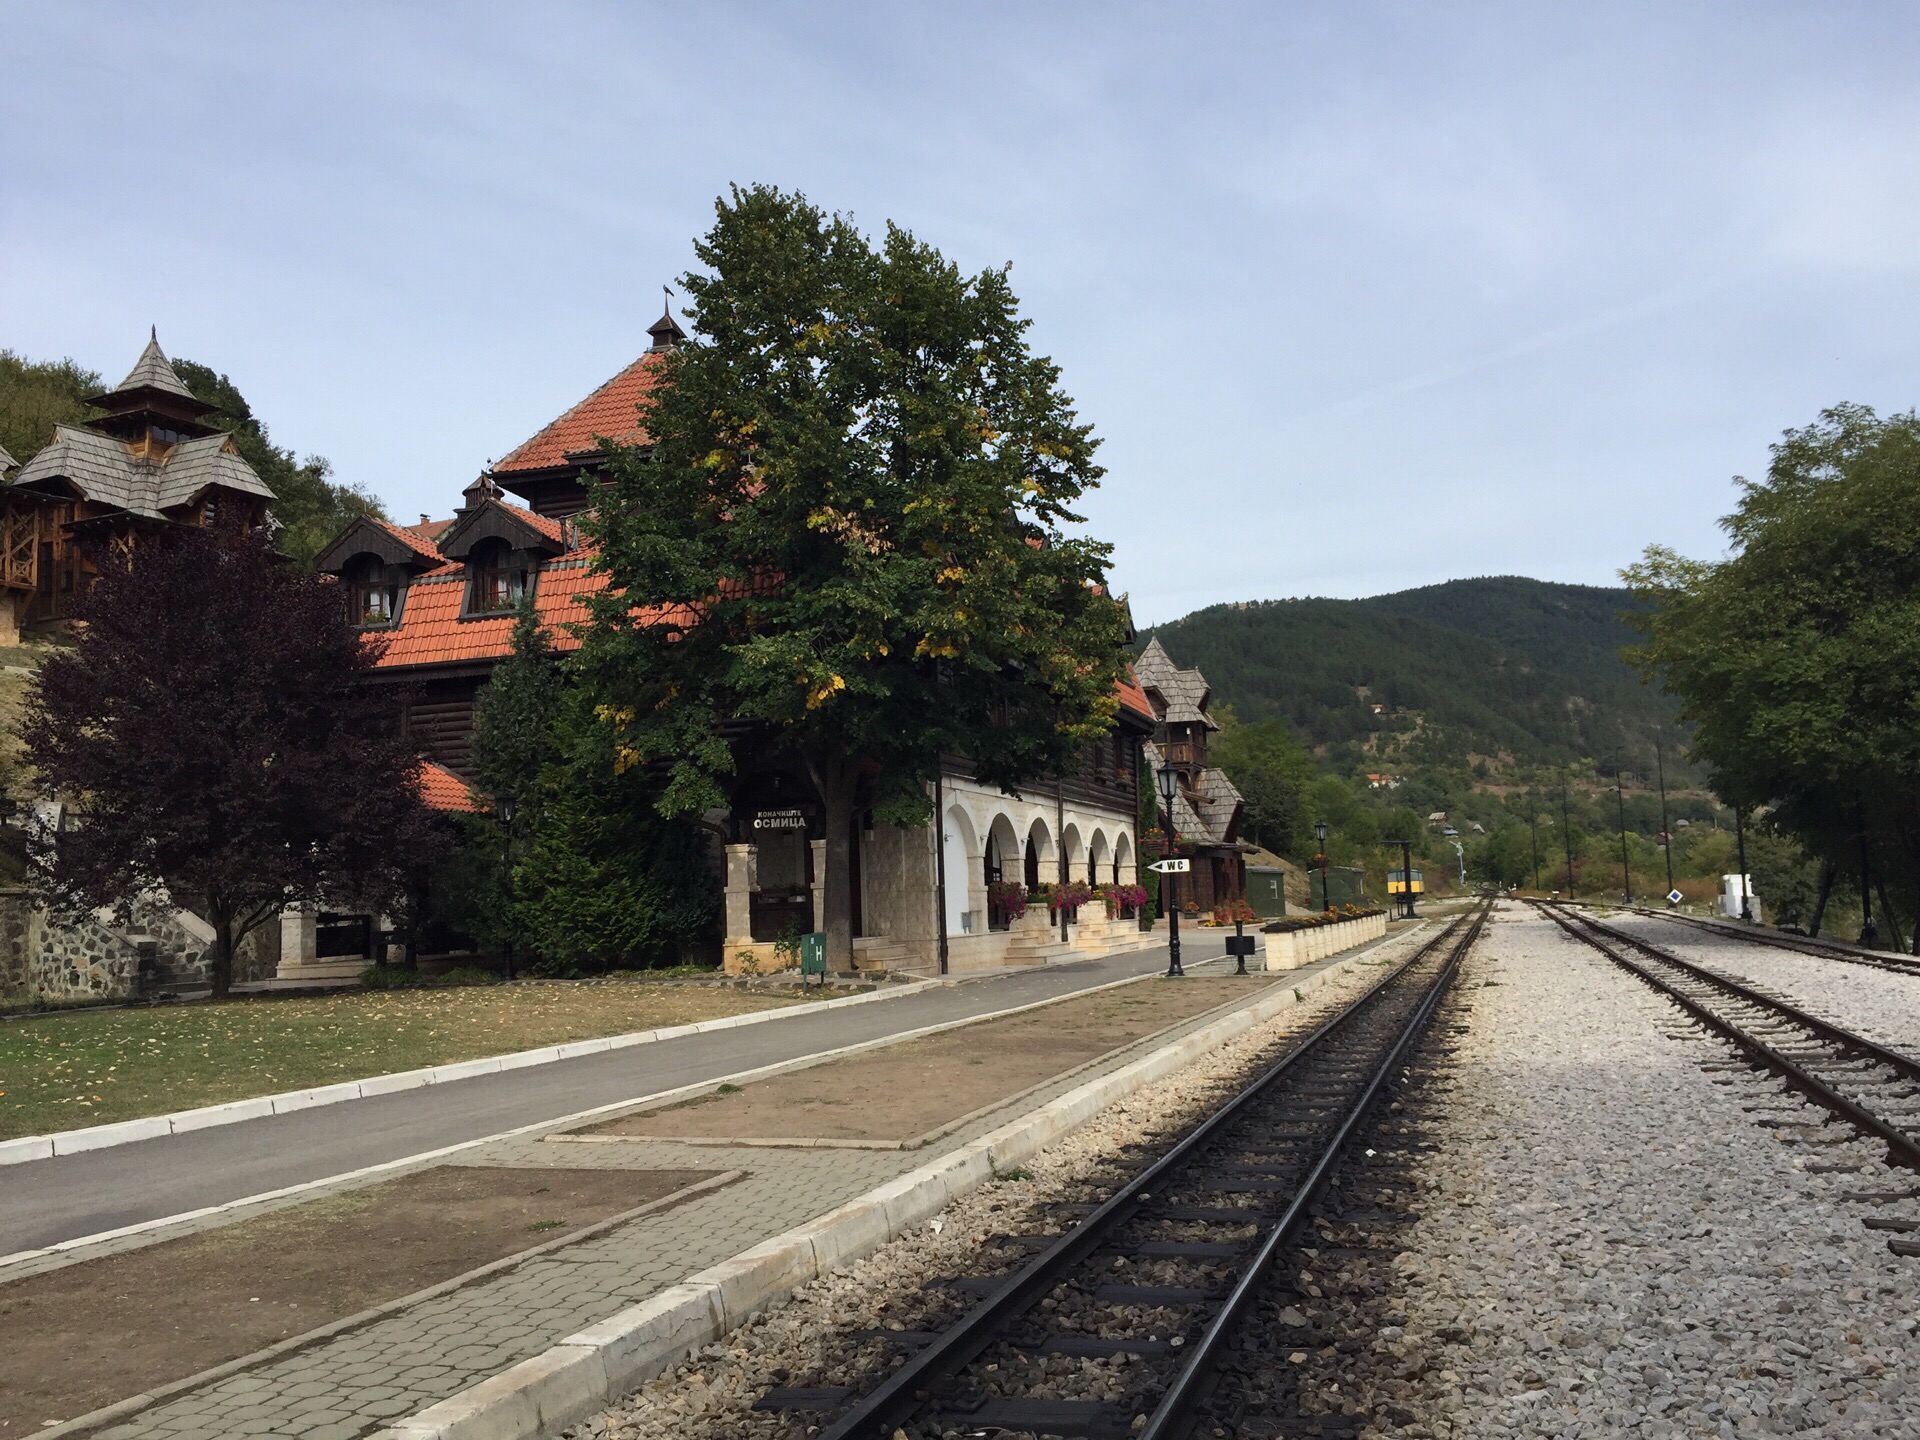 木头村附近的8字小火车车站很美，设施完备。